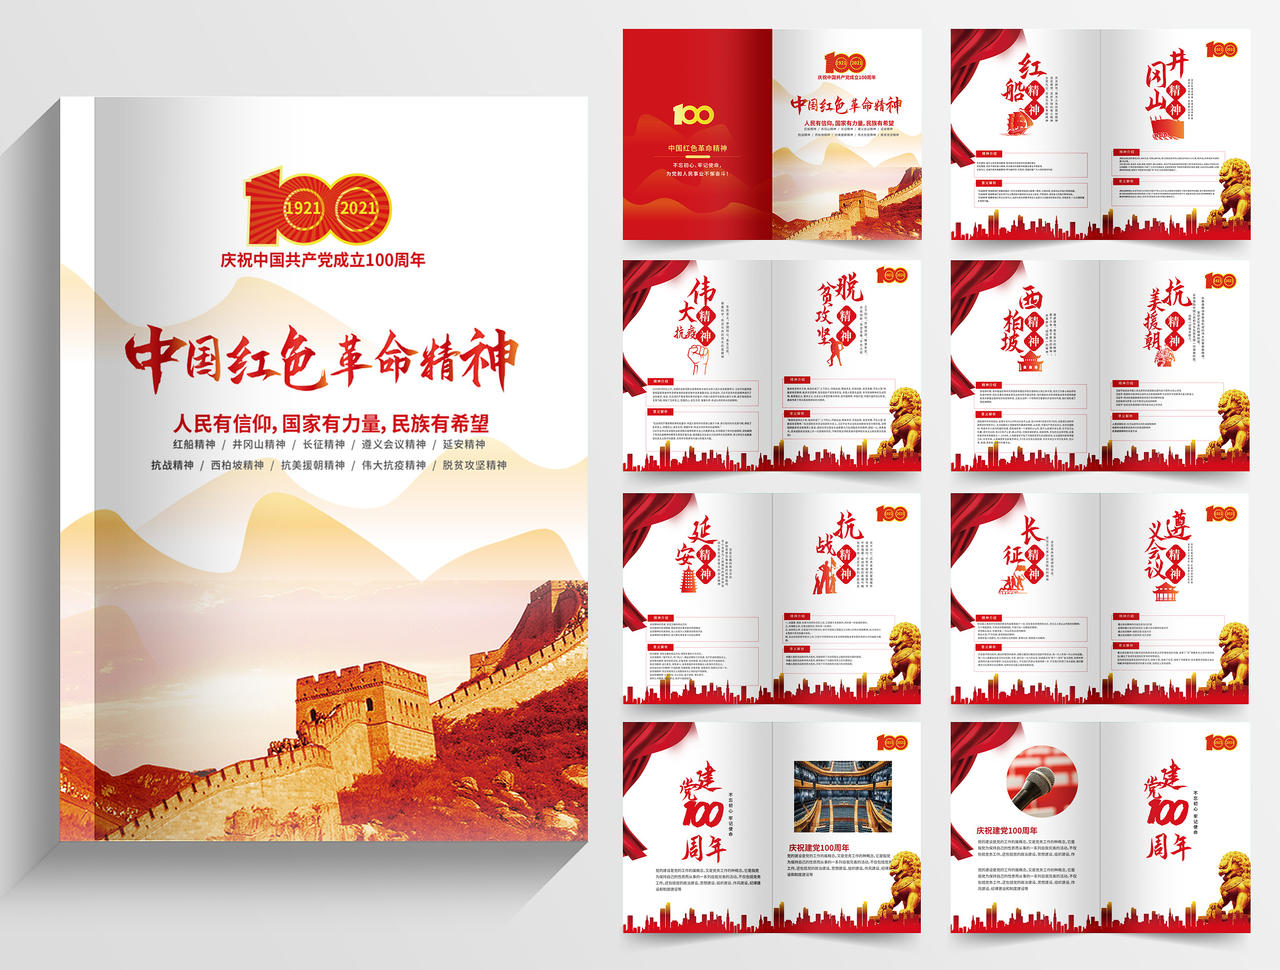 红色背景创意大气中国红色革命精神画册整套设计党史画册